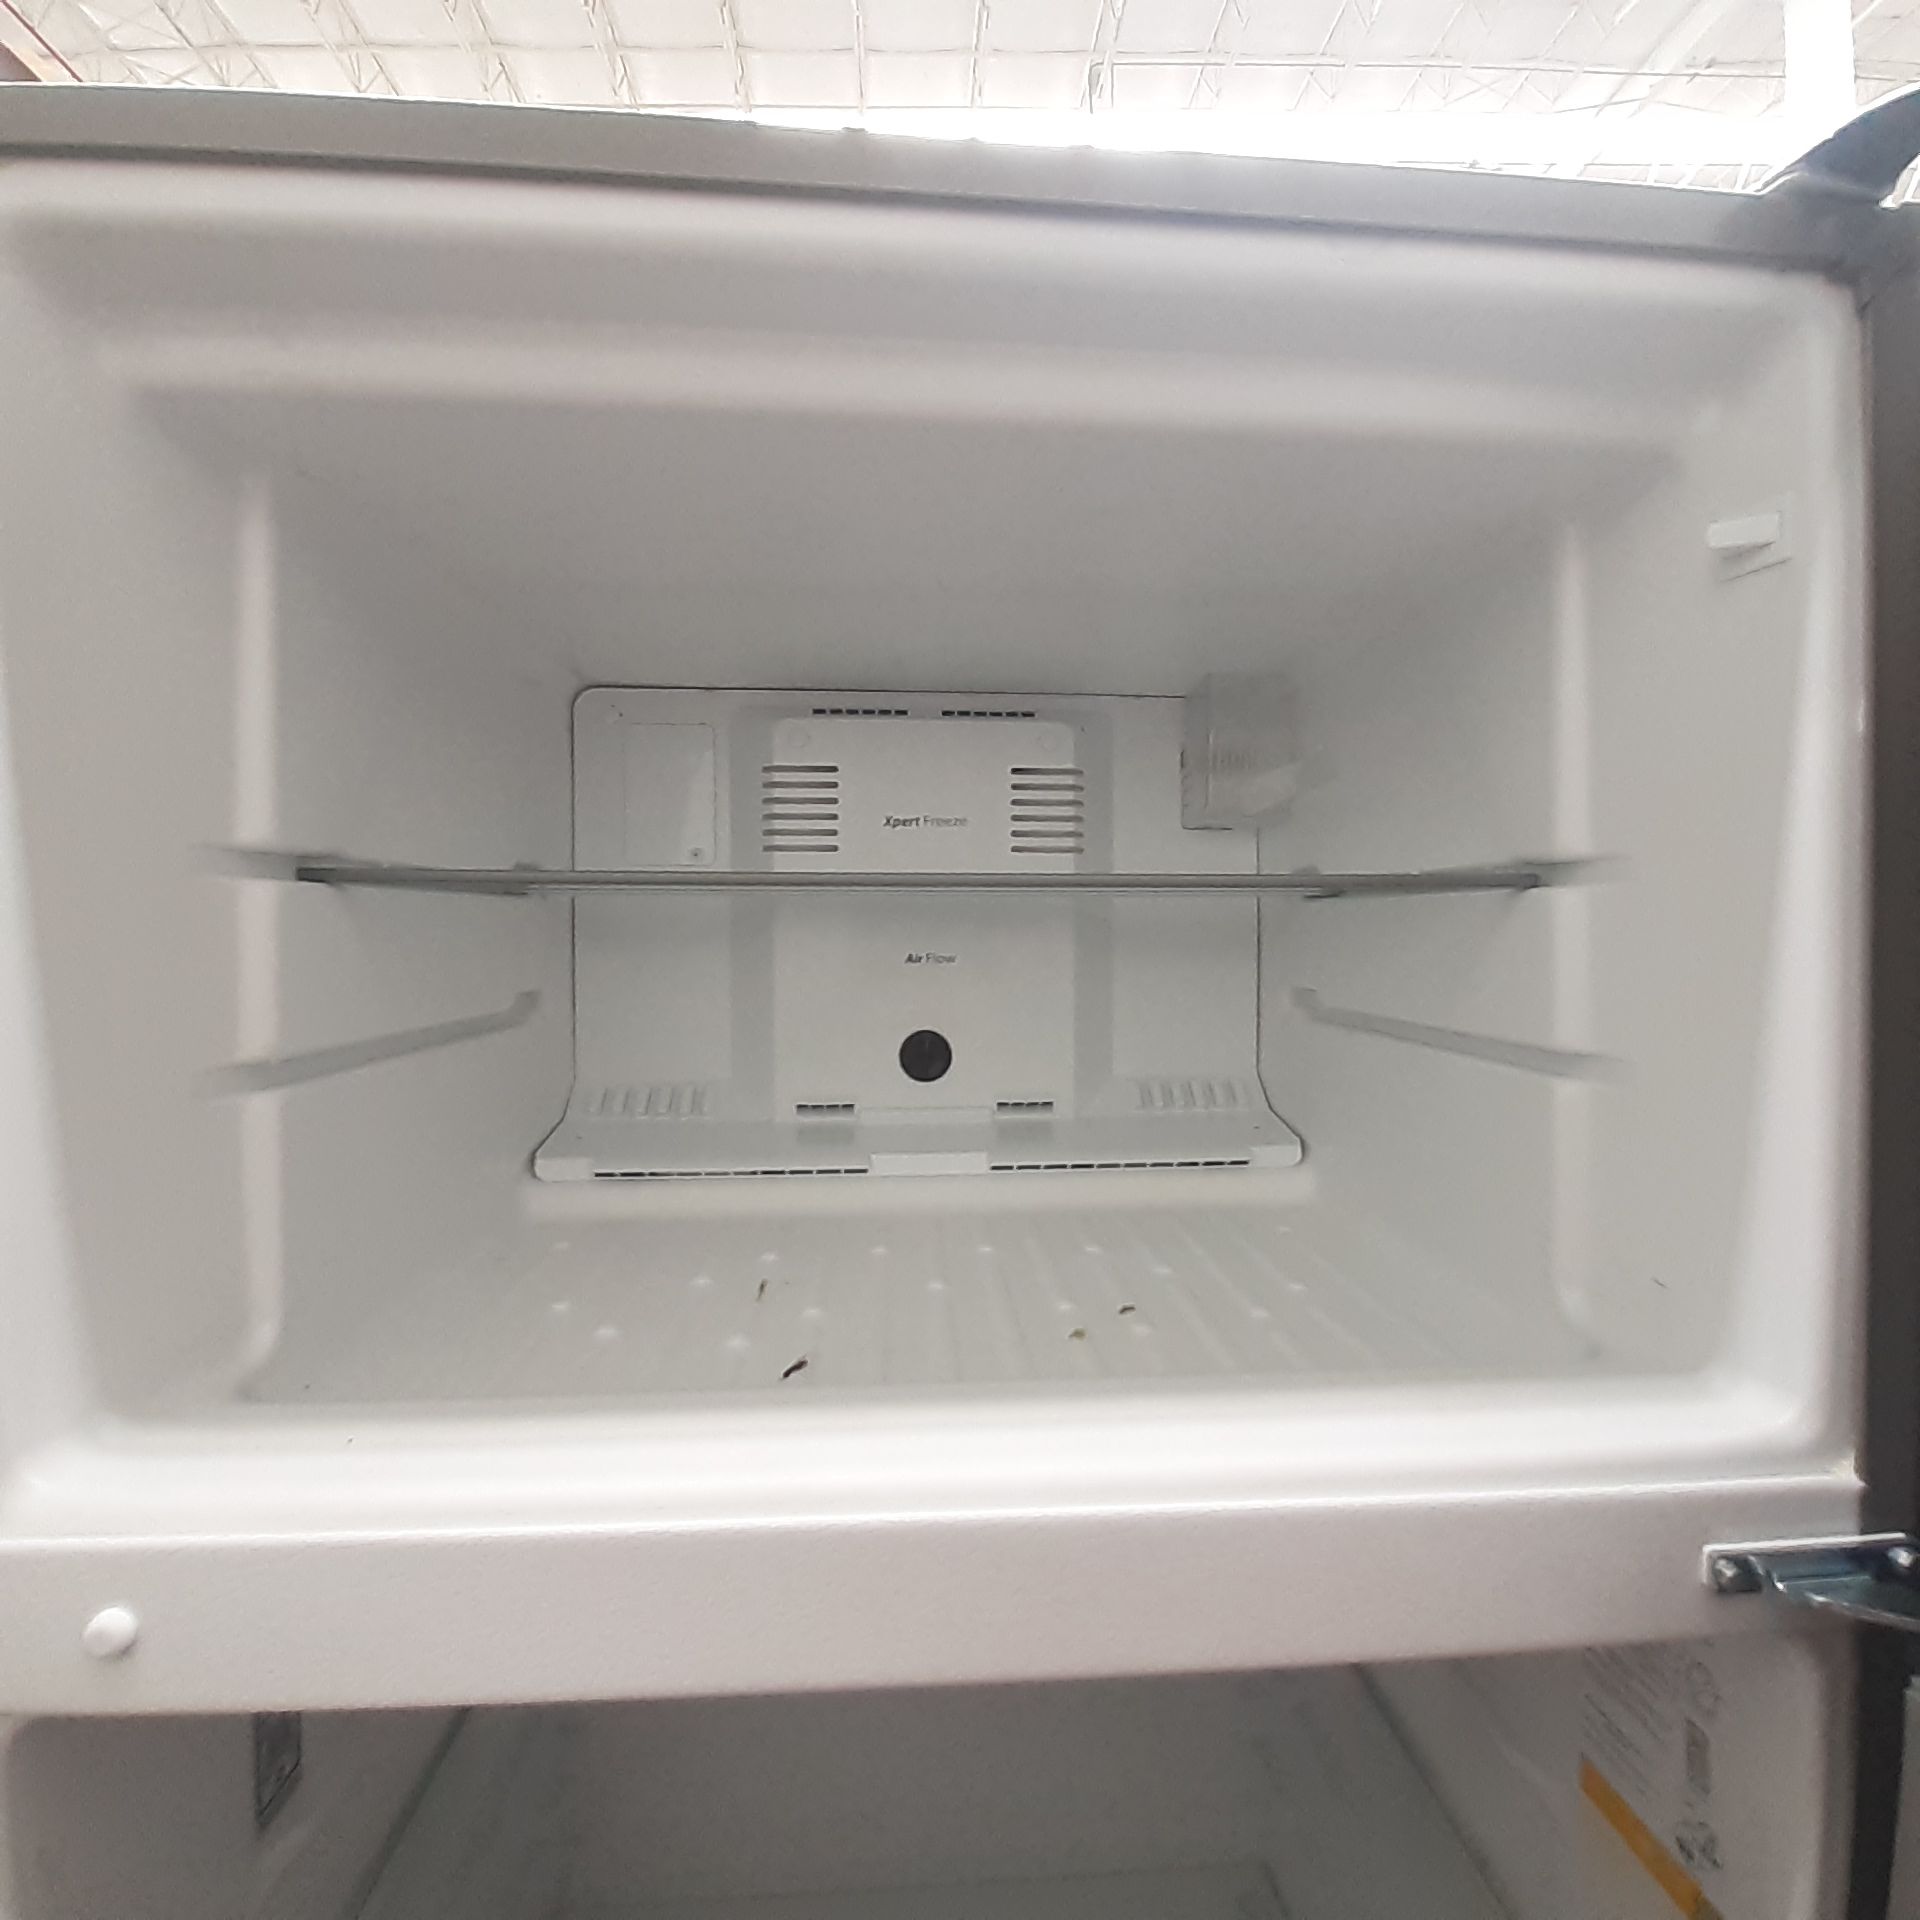 Lote De 2 Refrigeradores: 1 Refrigerador Marca Whirlpool, 1 Refrigerador Marca Mabe, Distintos Model - Image 17 of 22